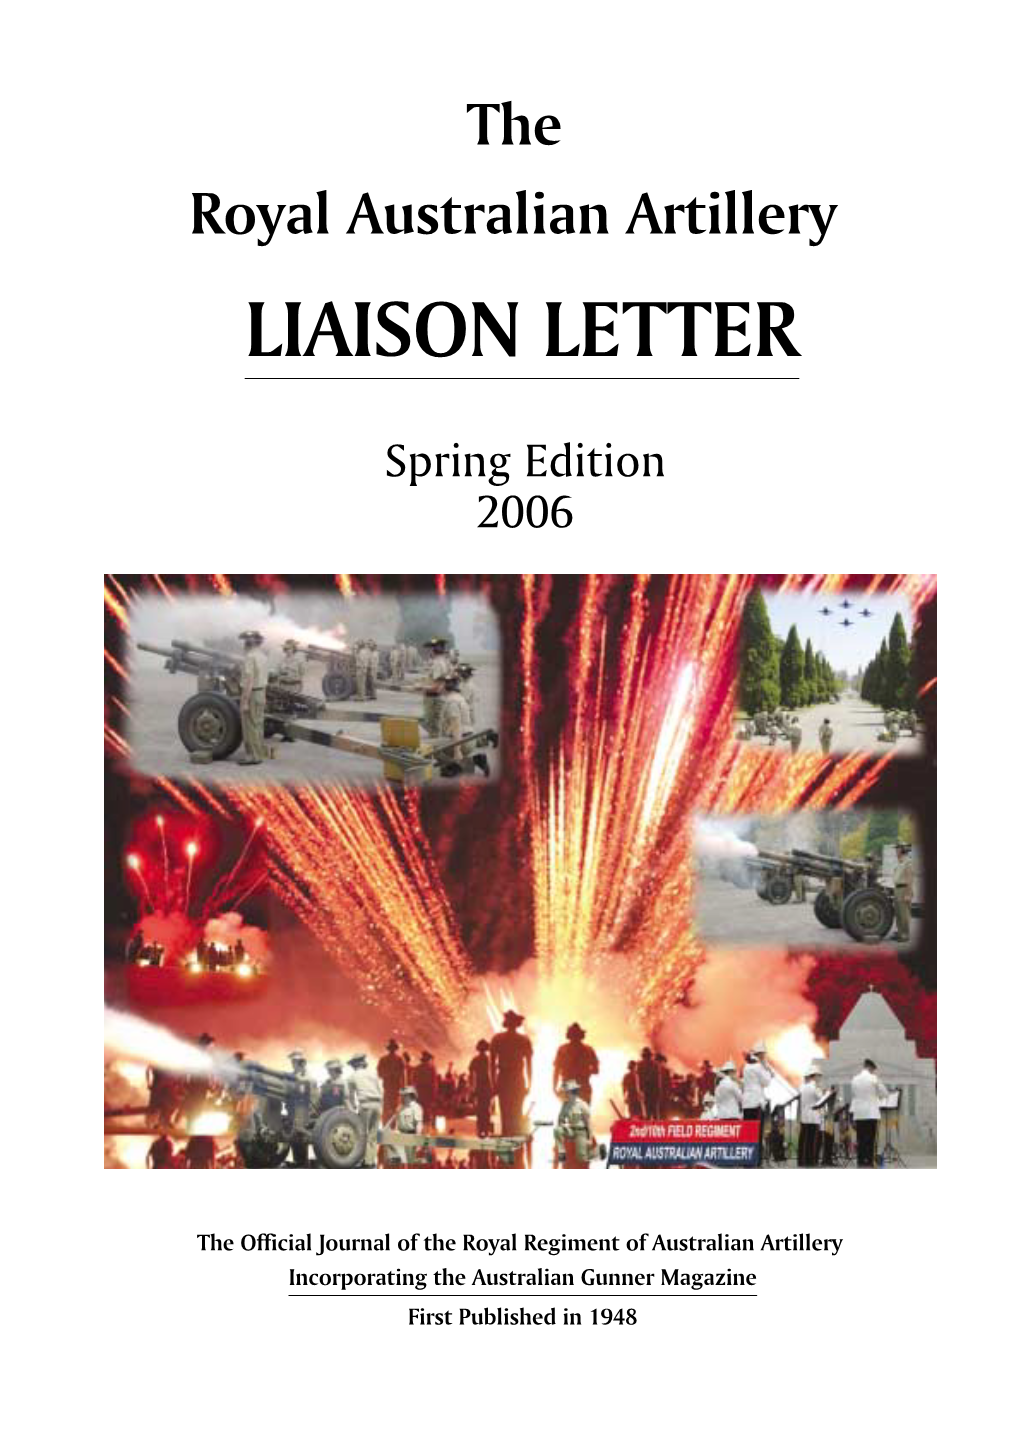 Raaliaison Letter Spring 2006